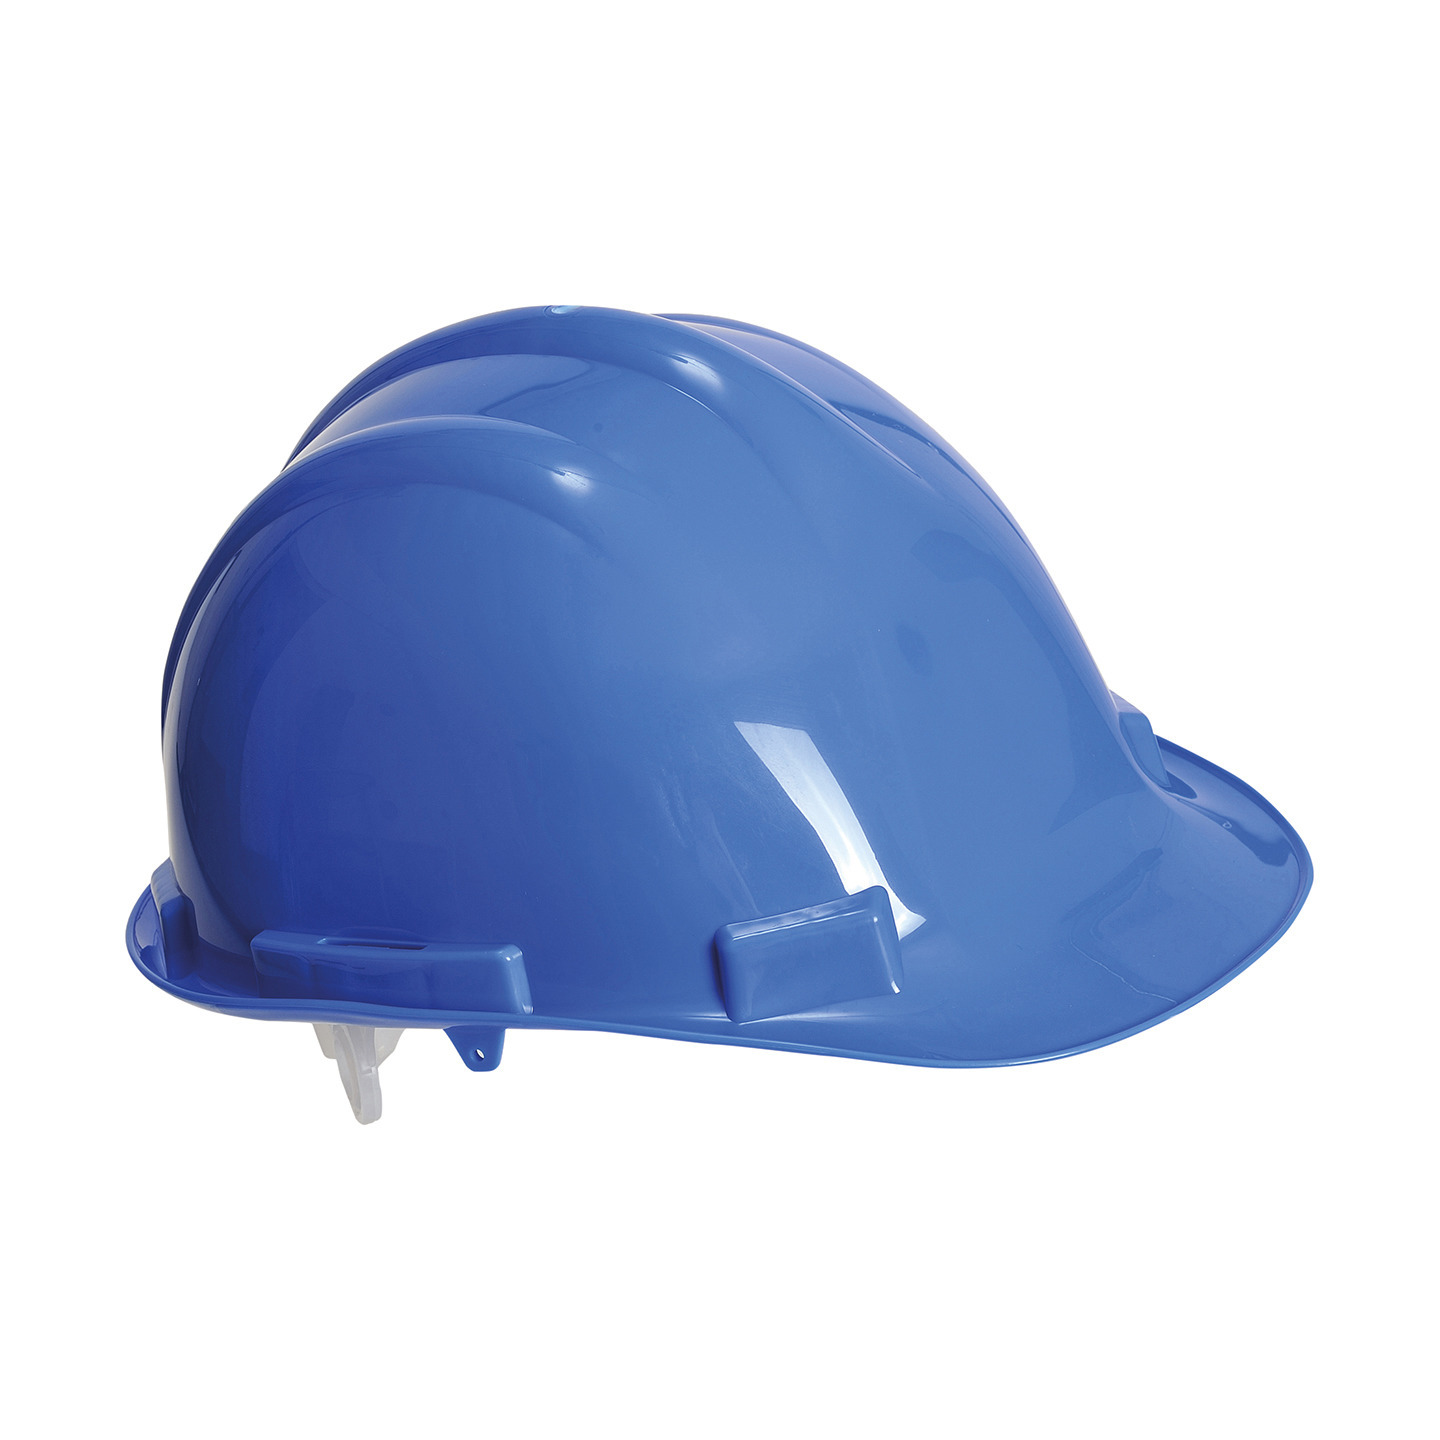 Set van 4x stuks veiligheidshelmen-bouwhelmen hoofdbescherming blauw verstelbaar 55-62 cm